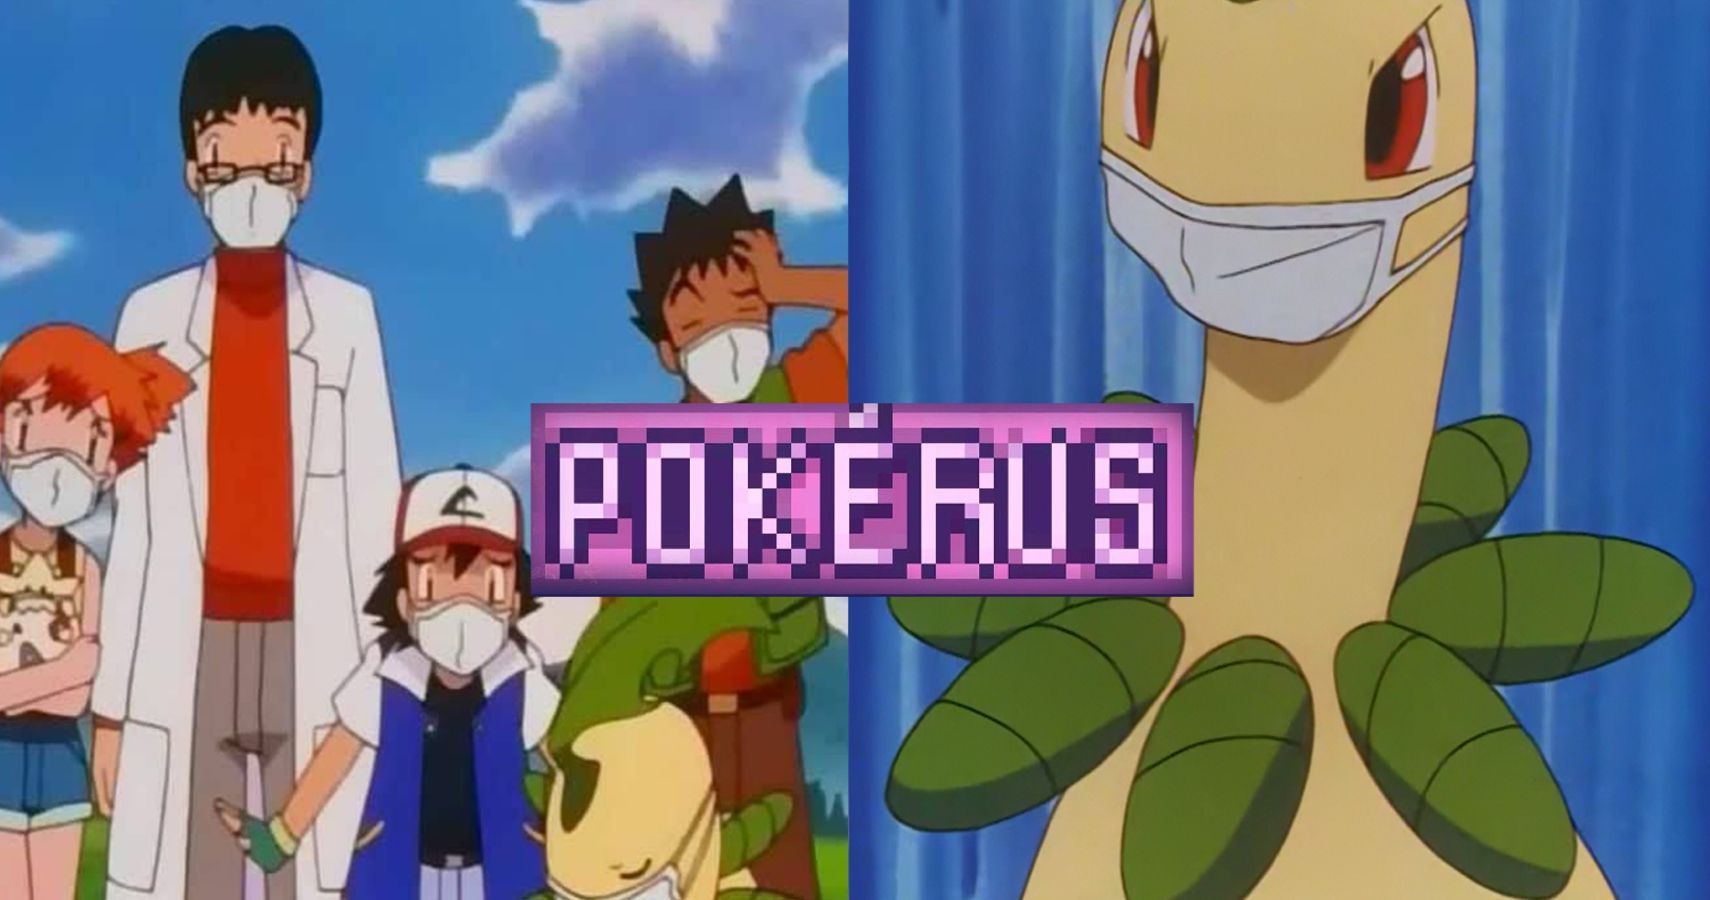 pokerus article guide pokemon anime graphic